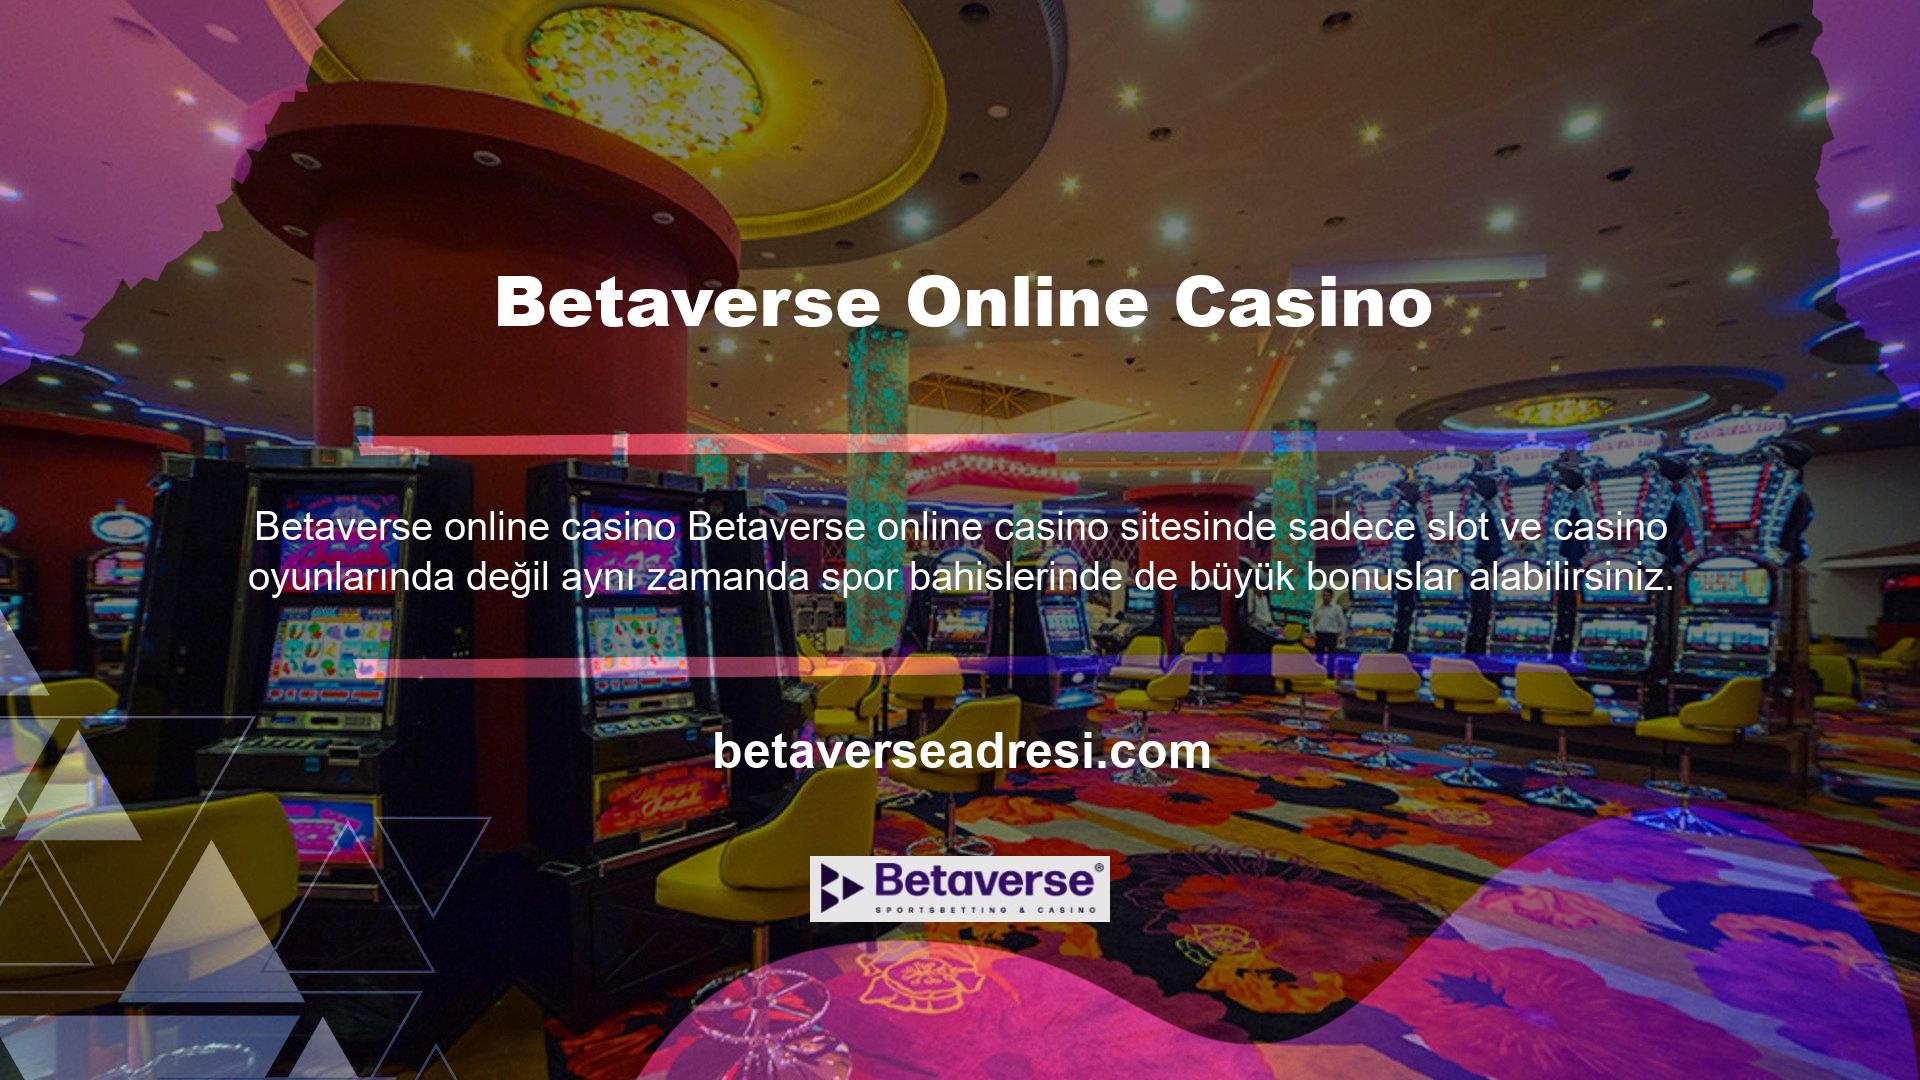 Bu avantaj, çevrimiçi casinoların daha fazla bahis seçeneğine sahip olması ve hafta sonları daha yoğun oyunlara sahip olması nedeniyle üyelerin hafta içi üyelere göre daha fazla eğlenmelerine olanak tanır